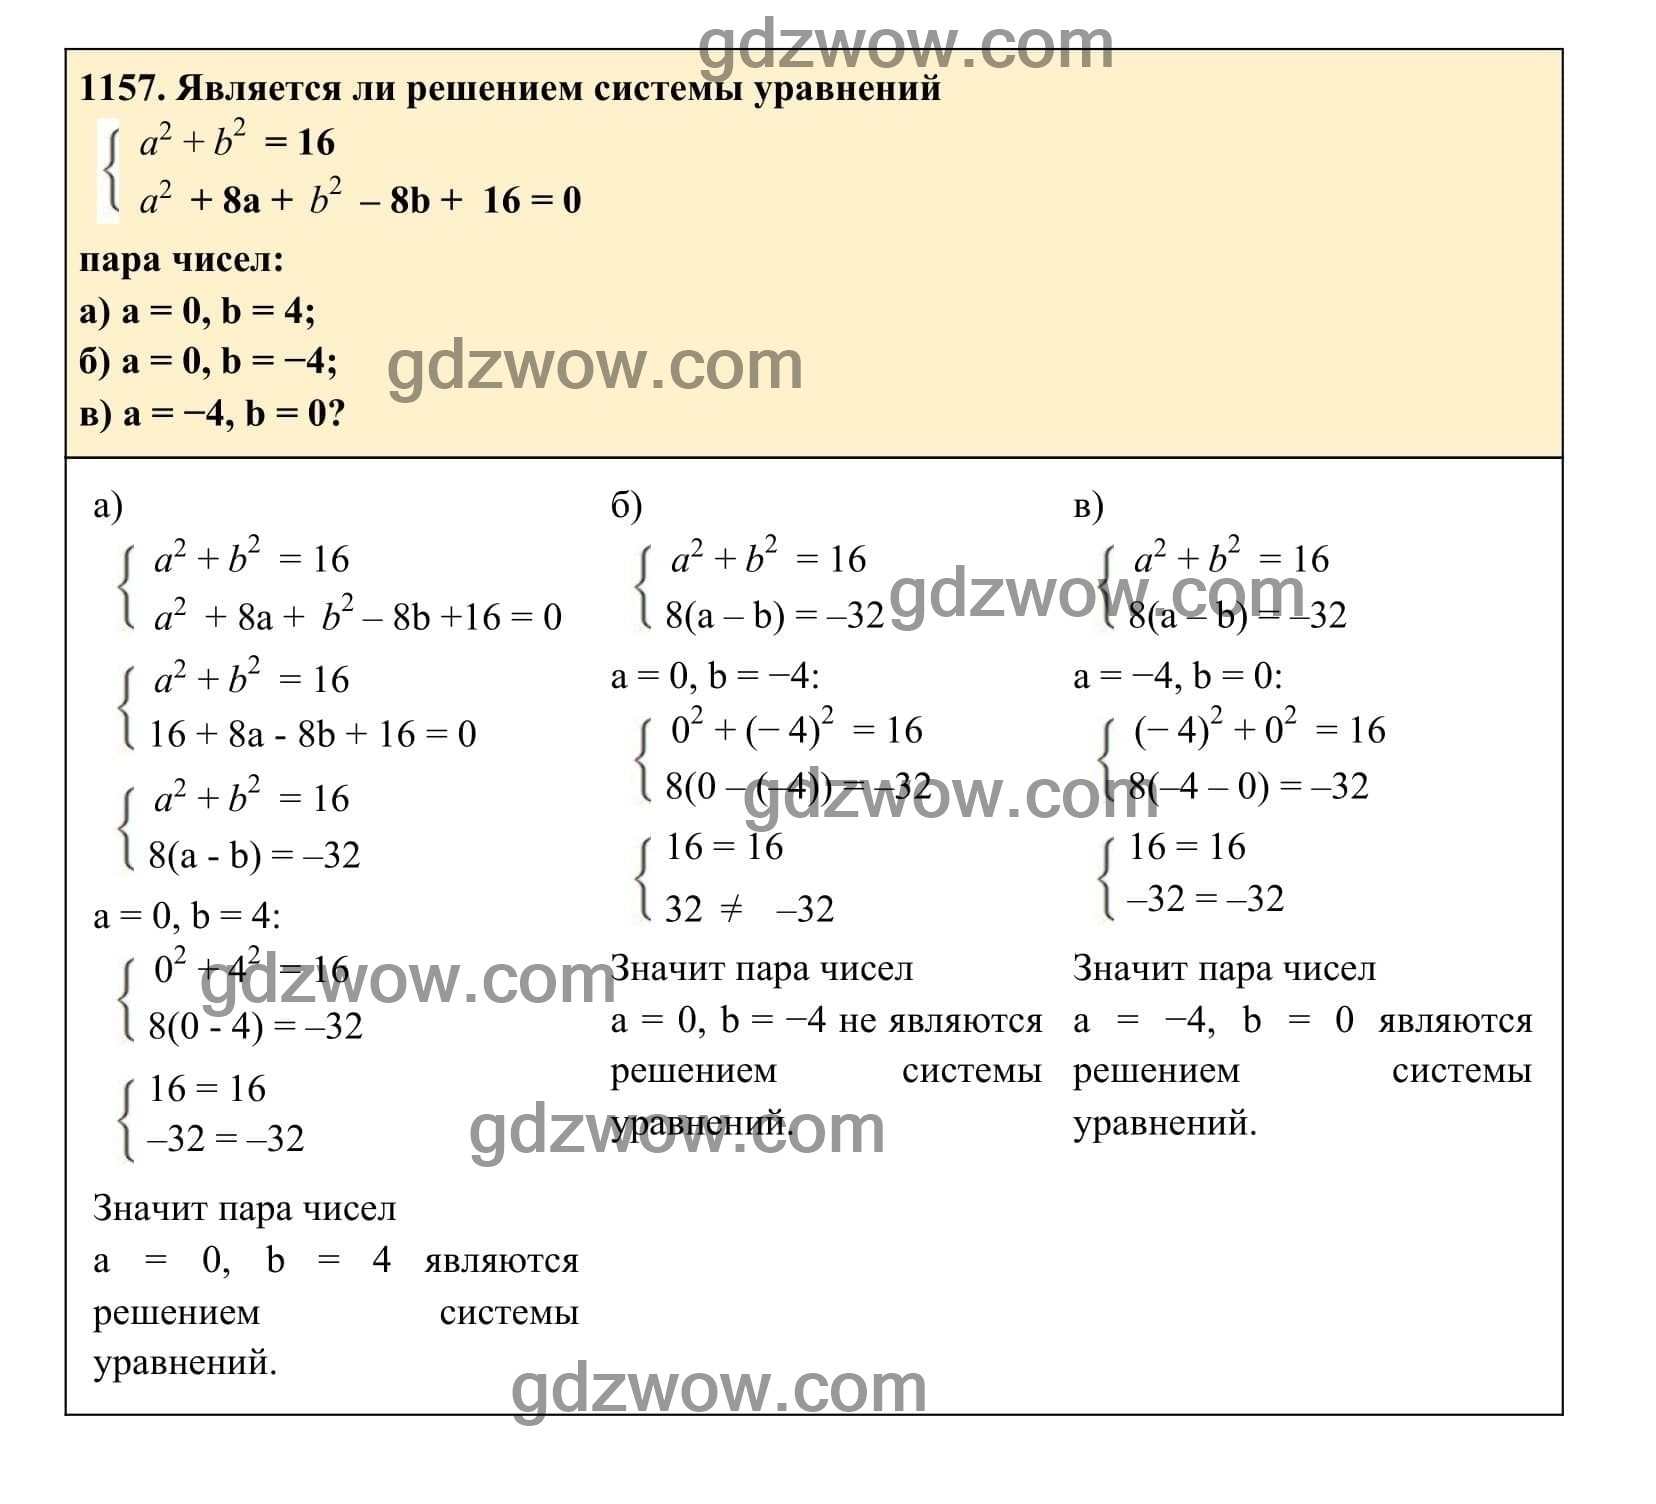 Упражнение 1157 - ГДЗ по Алгебре 7 класс Учебник Макарычев (решебник) - GDZwow